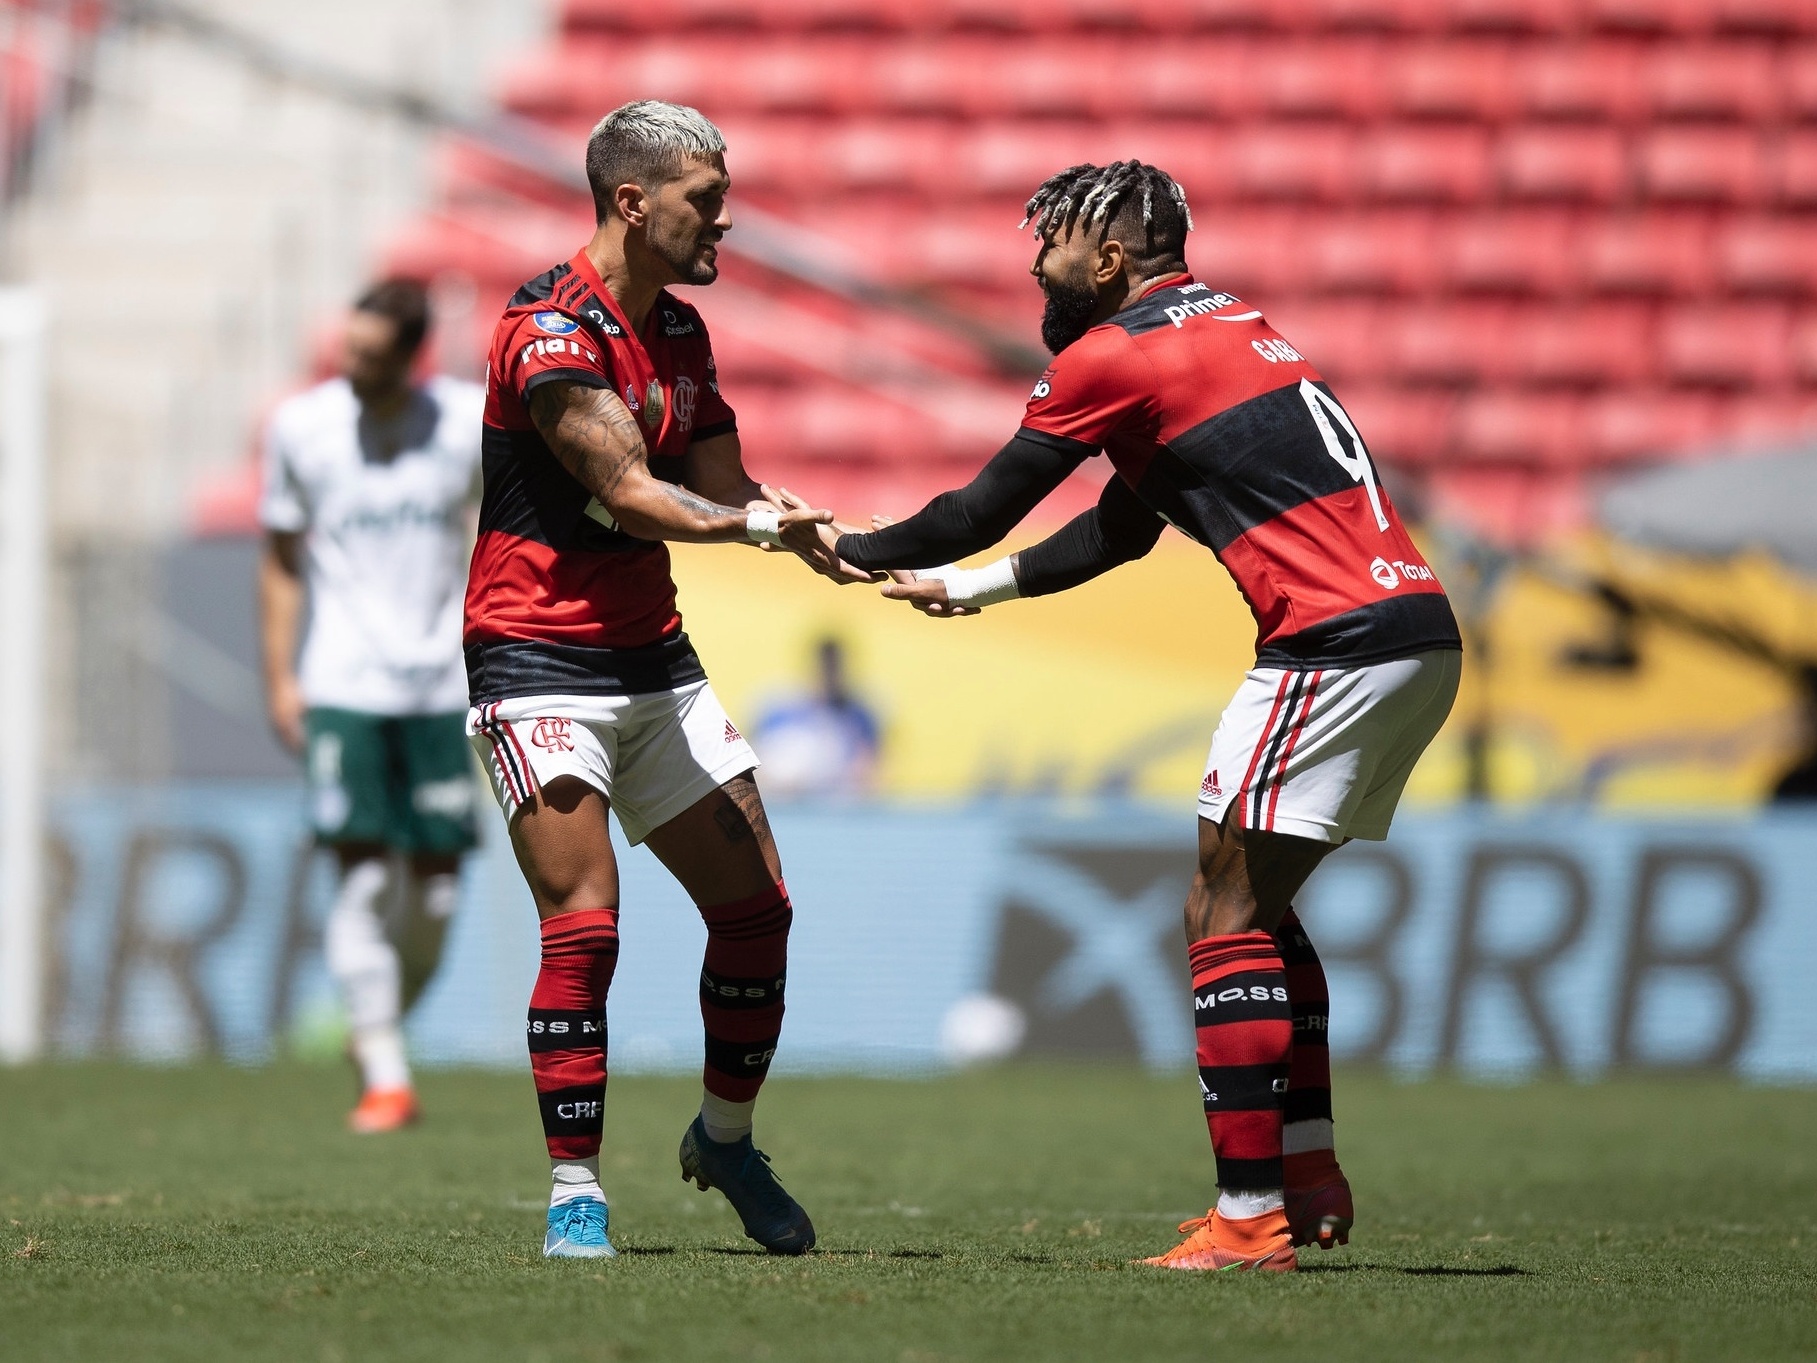 Palmeiras x Flamengo - Curiosidades da partida - Coluna do Fla